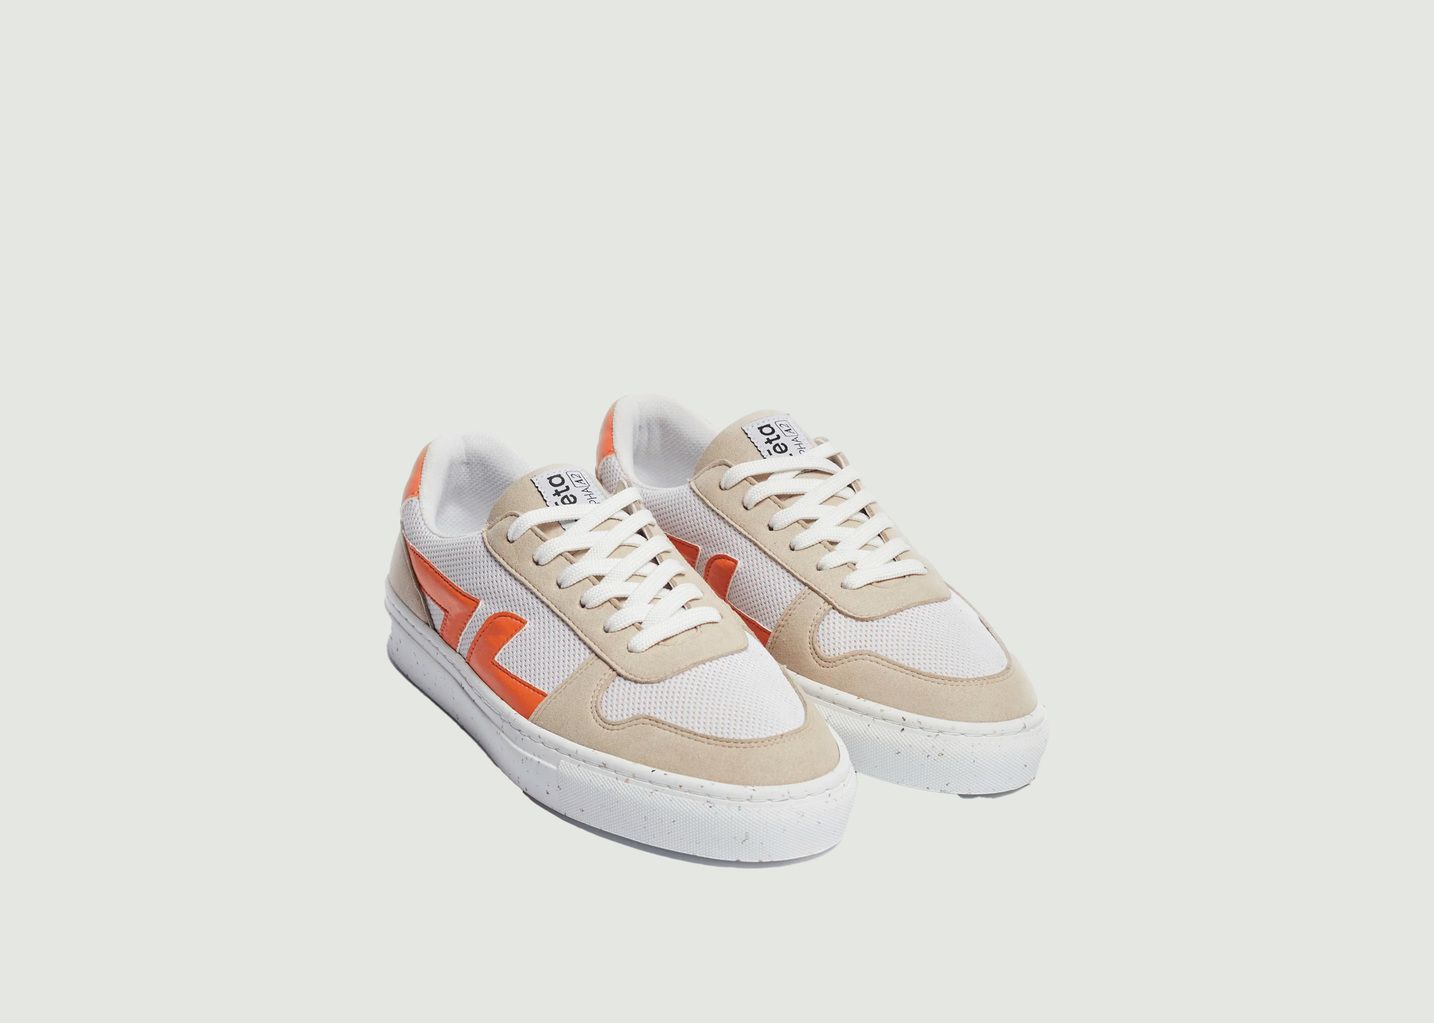 Alpha A2 sneakers - Zeta